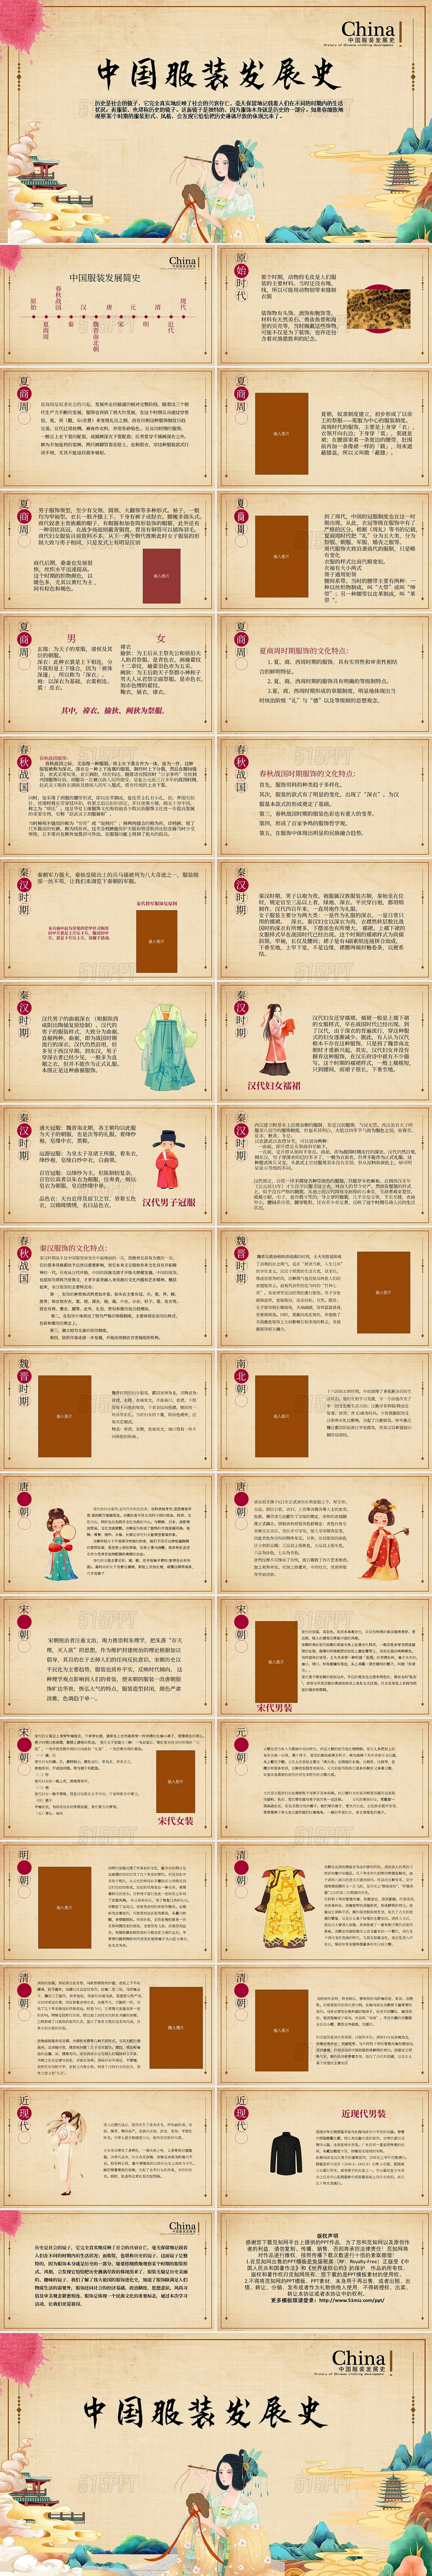 棕色卡通中国服饰发展史说课课件PPT模板中国服装发展史